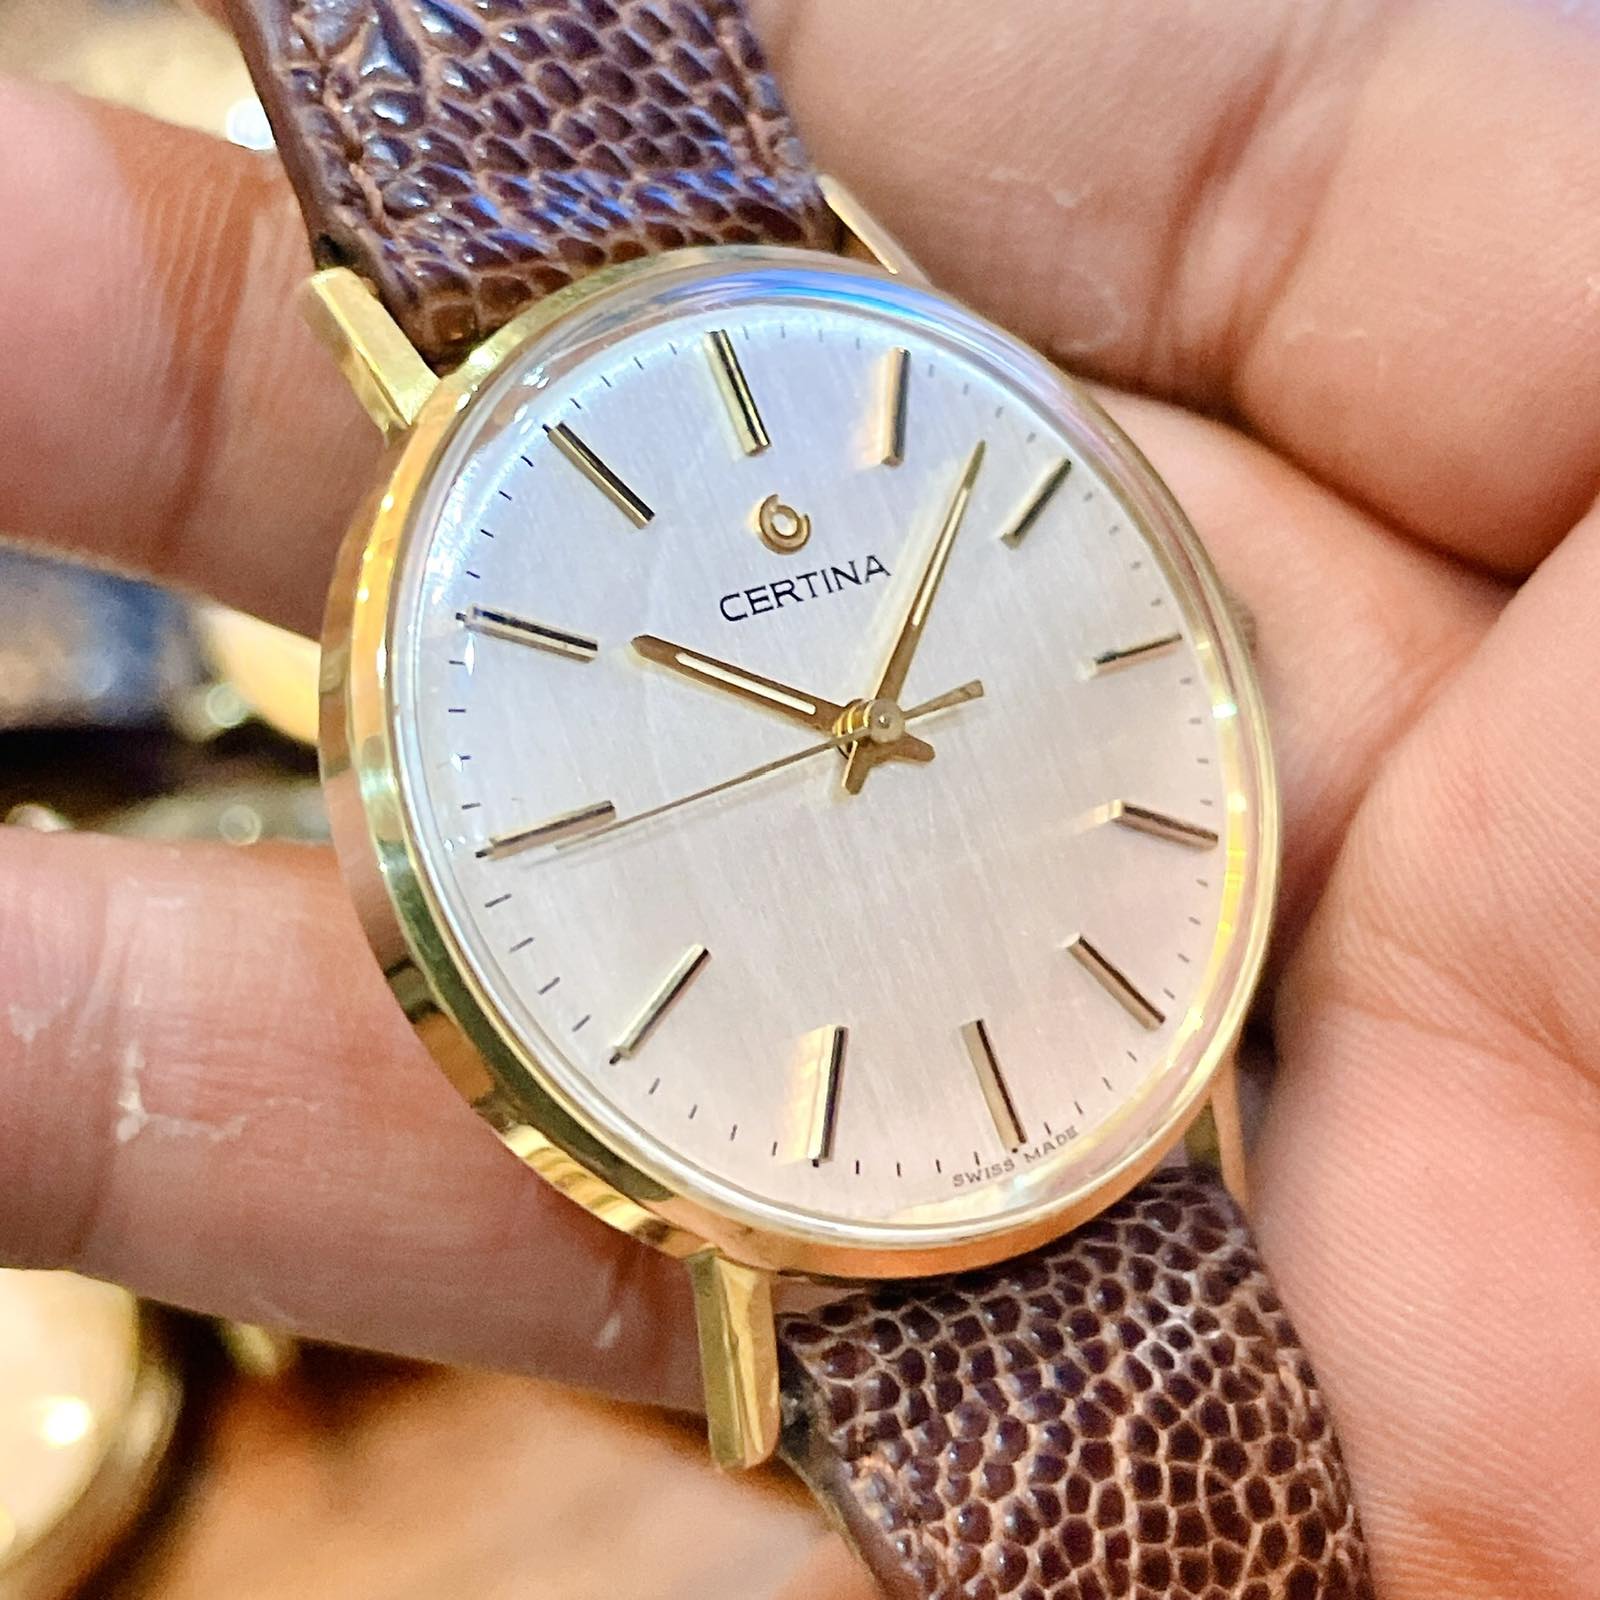 Đồng hồ cổ Certina lên dây vàng đúc đặc 18k chính hãng thụy Sĩ